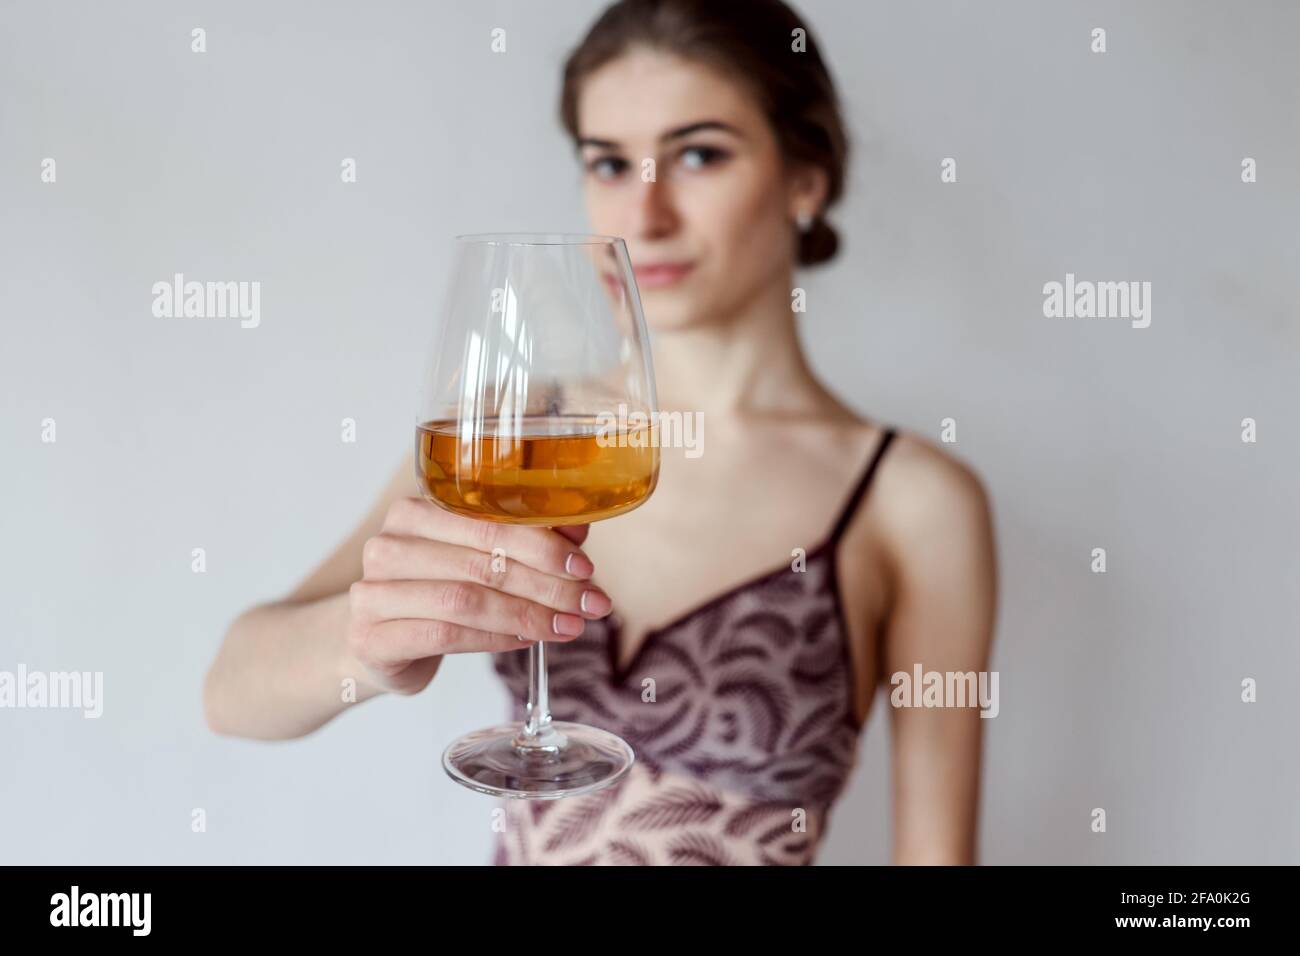 Donna carina gustando un bicchiere di vino bianco. Copia spazio, sfondo, spazio negativo per sovrapposizione testo, persone reali, elemento umano, estate, toast, bevande, c Foto Stock